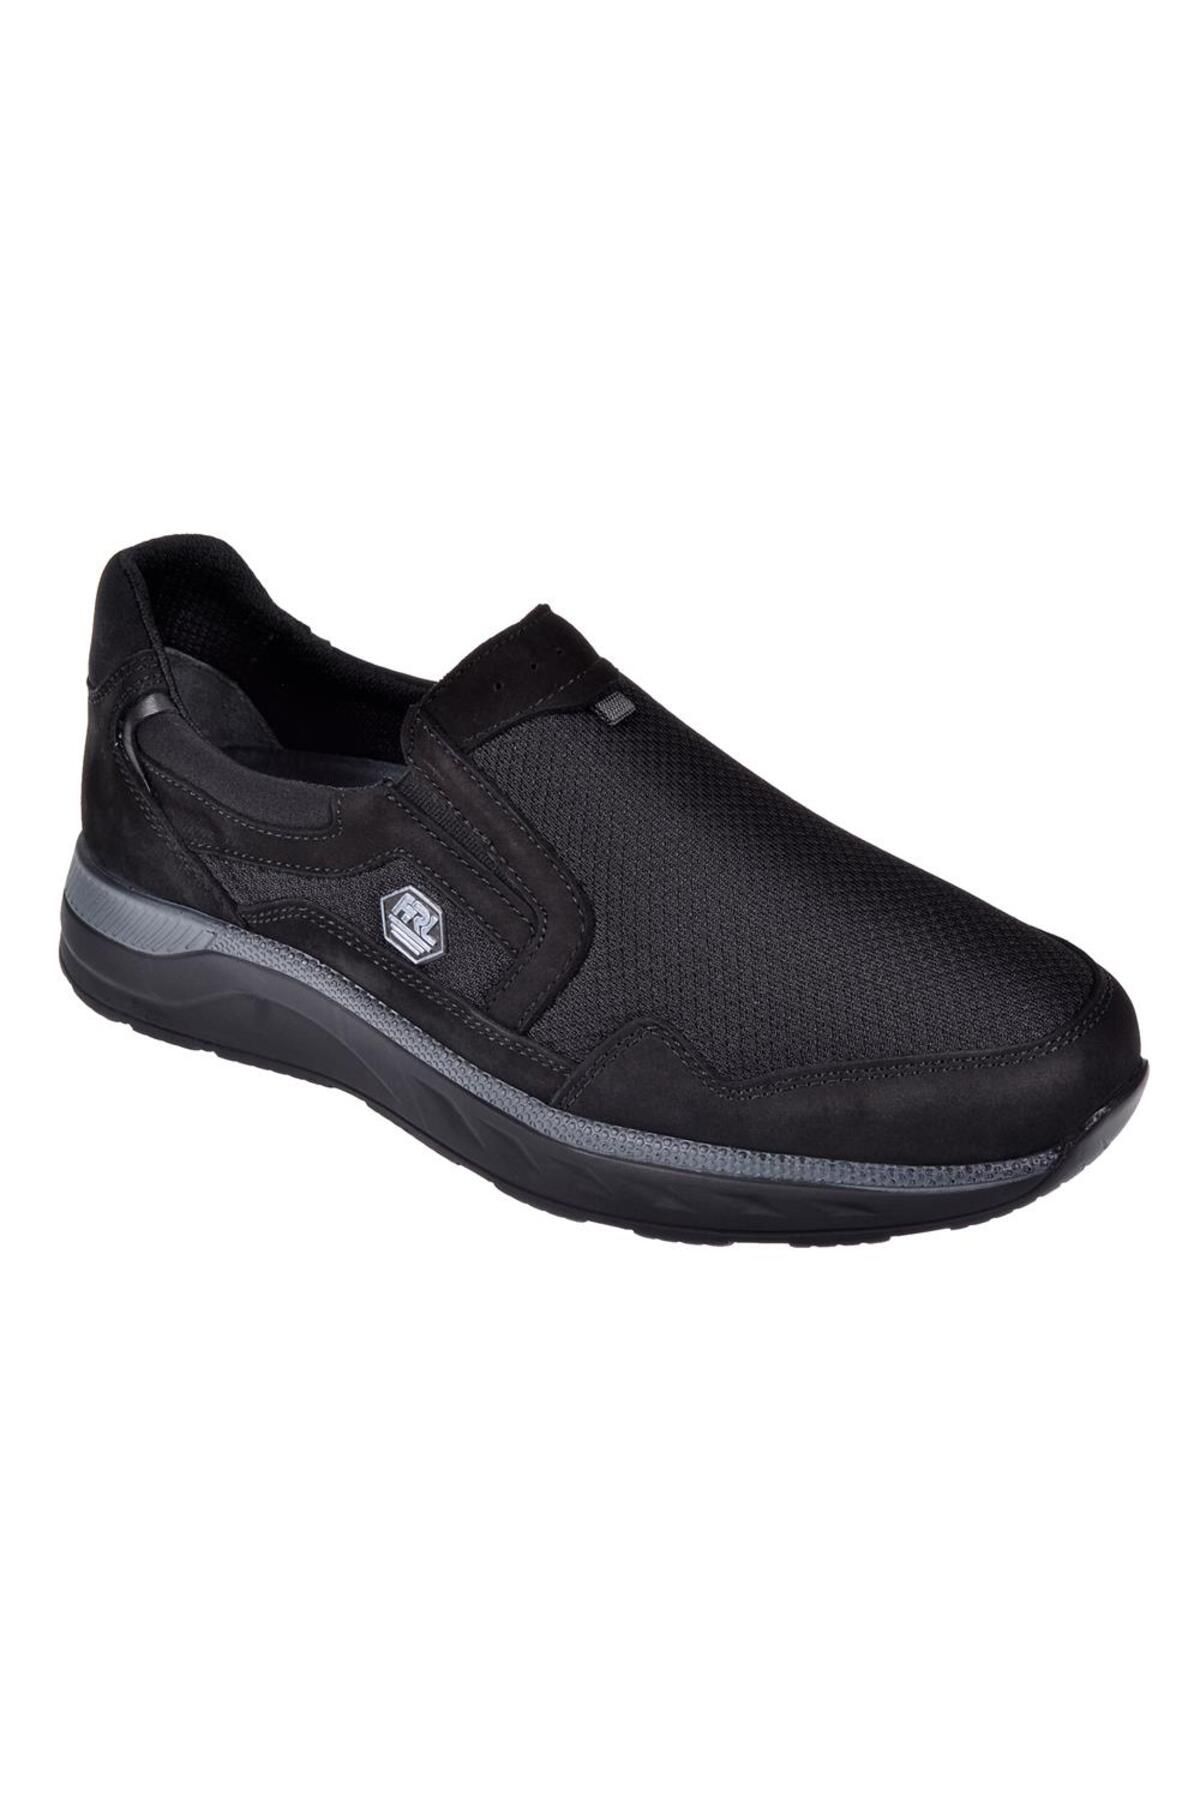 Forelli Comfort Üzeri File Erkek Spor Ayakkabı For-46005 Siyah